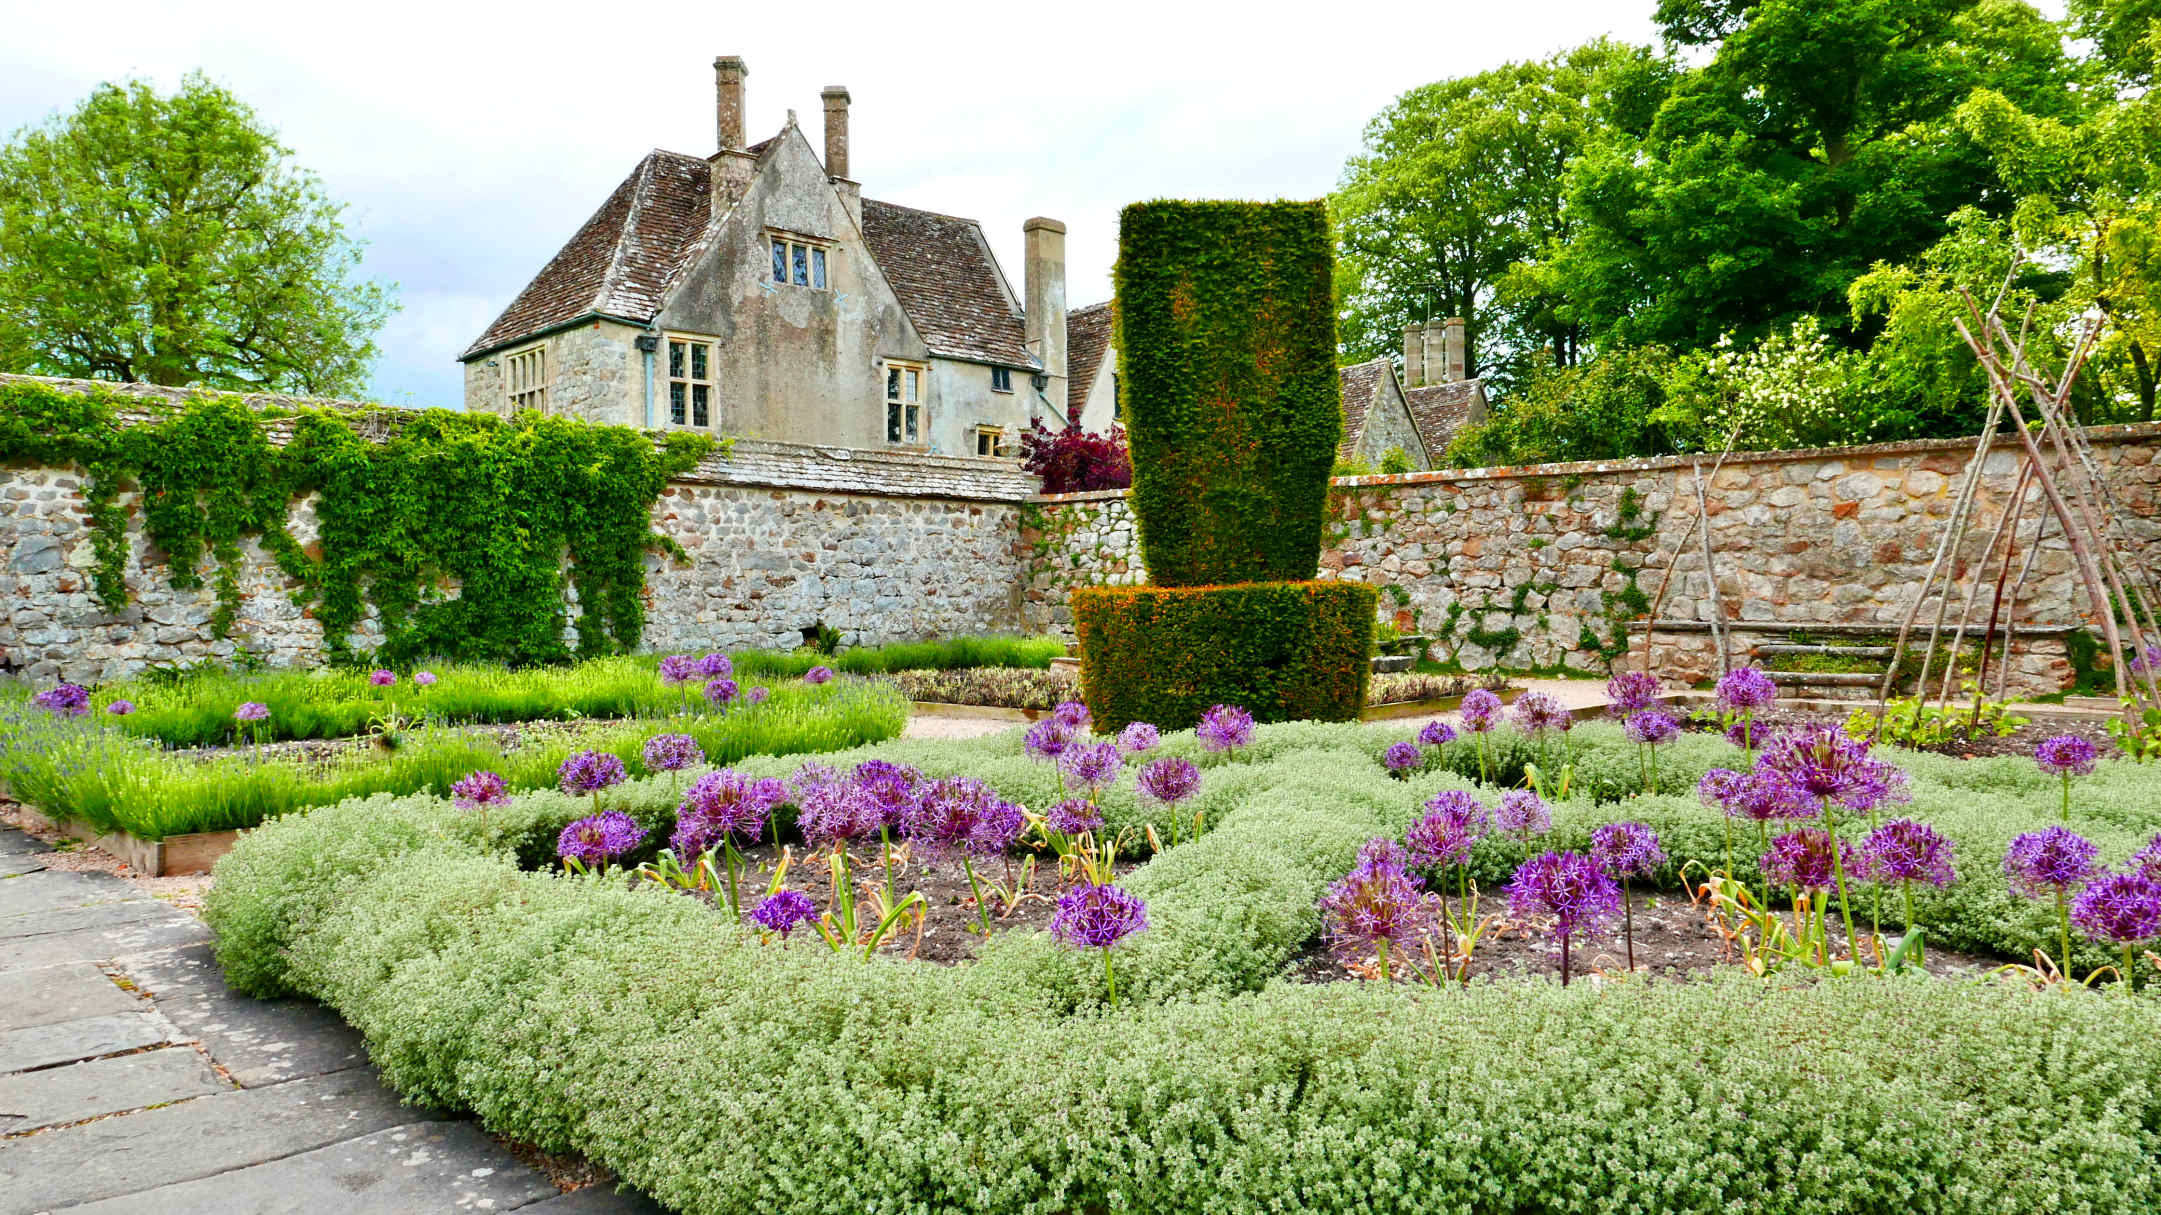 Avebury Gardens and Manor